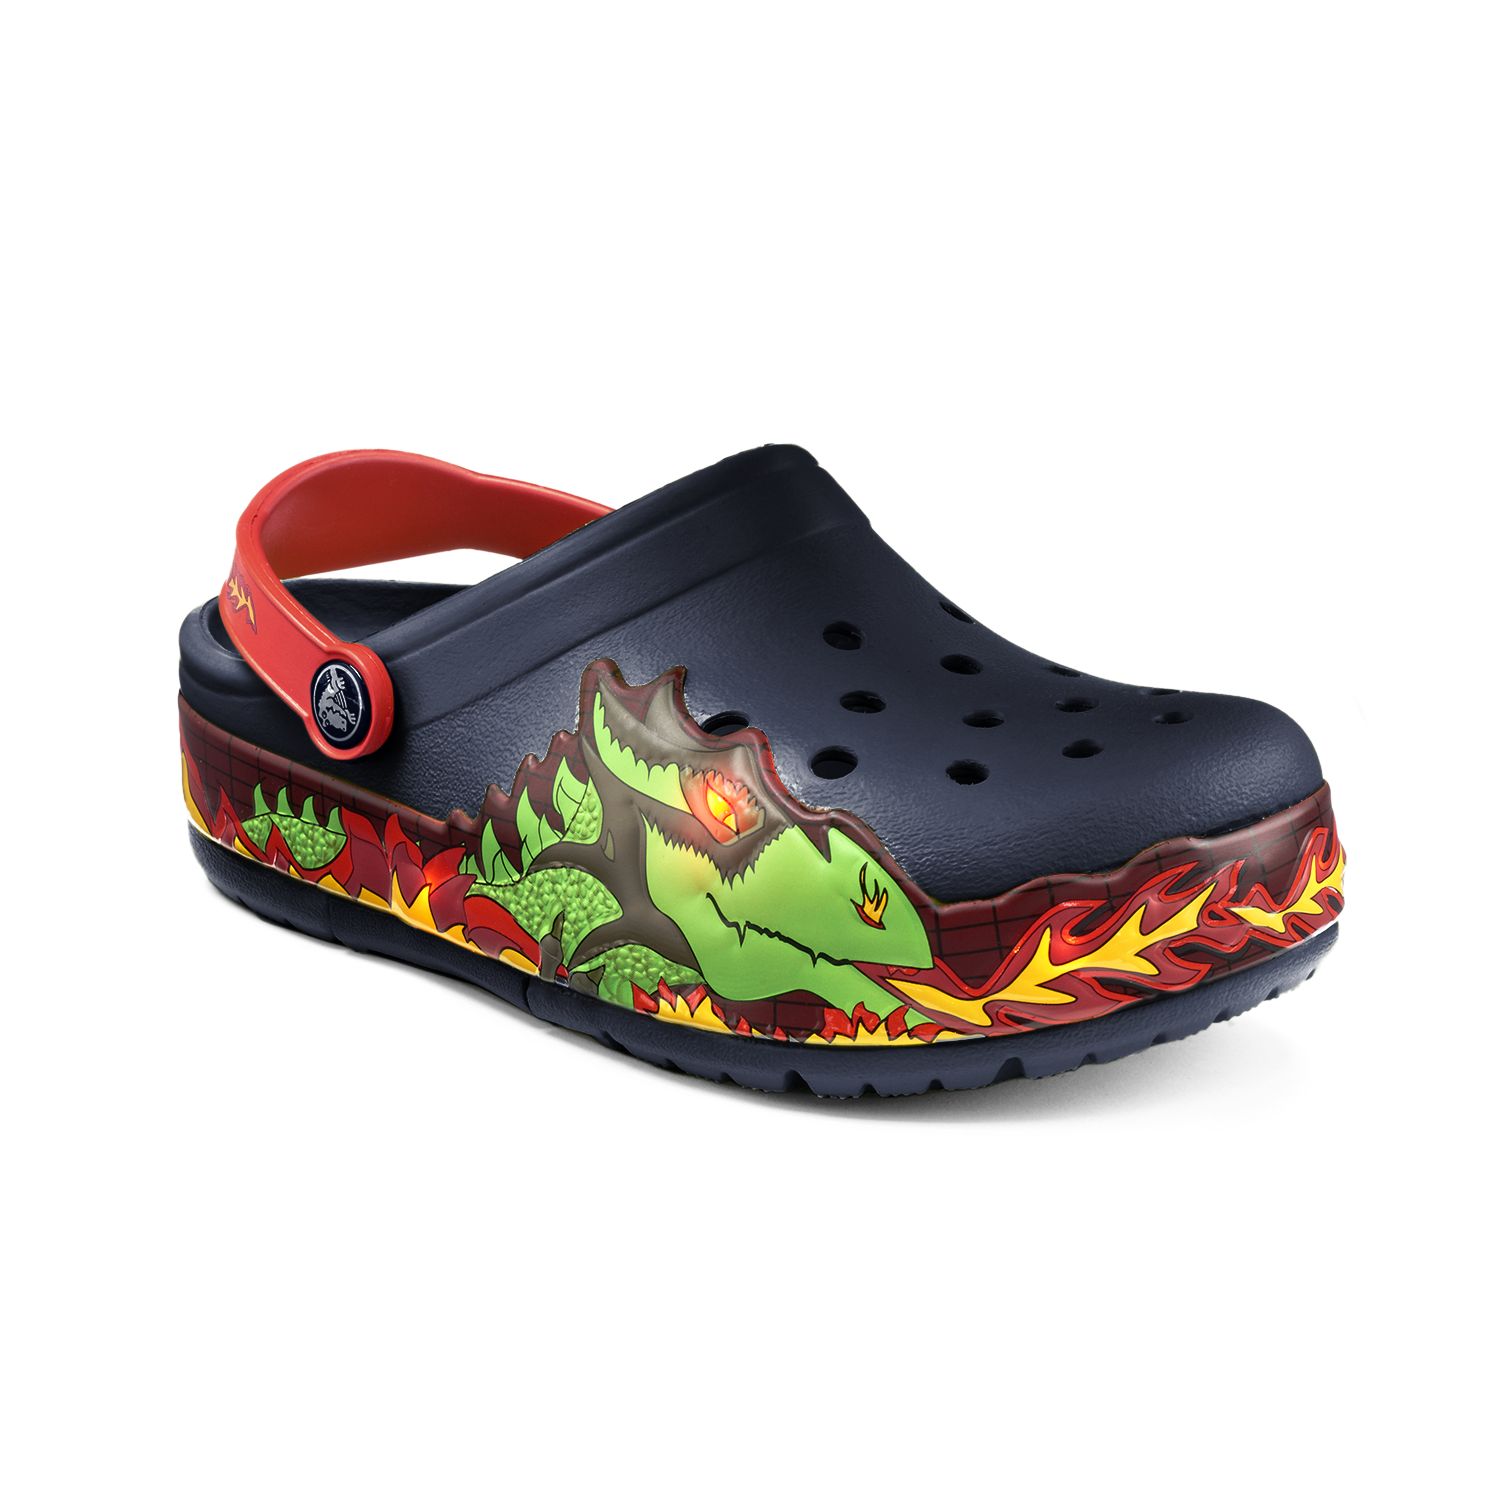 fire crocs